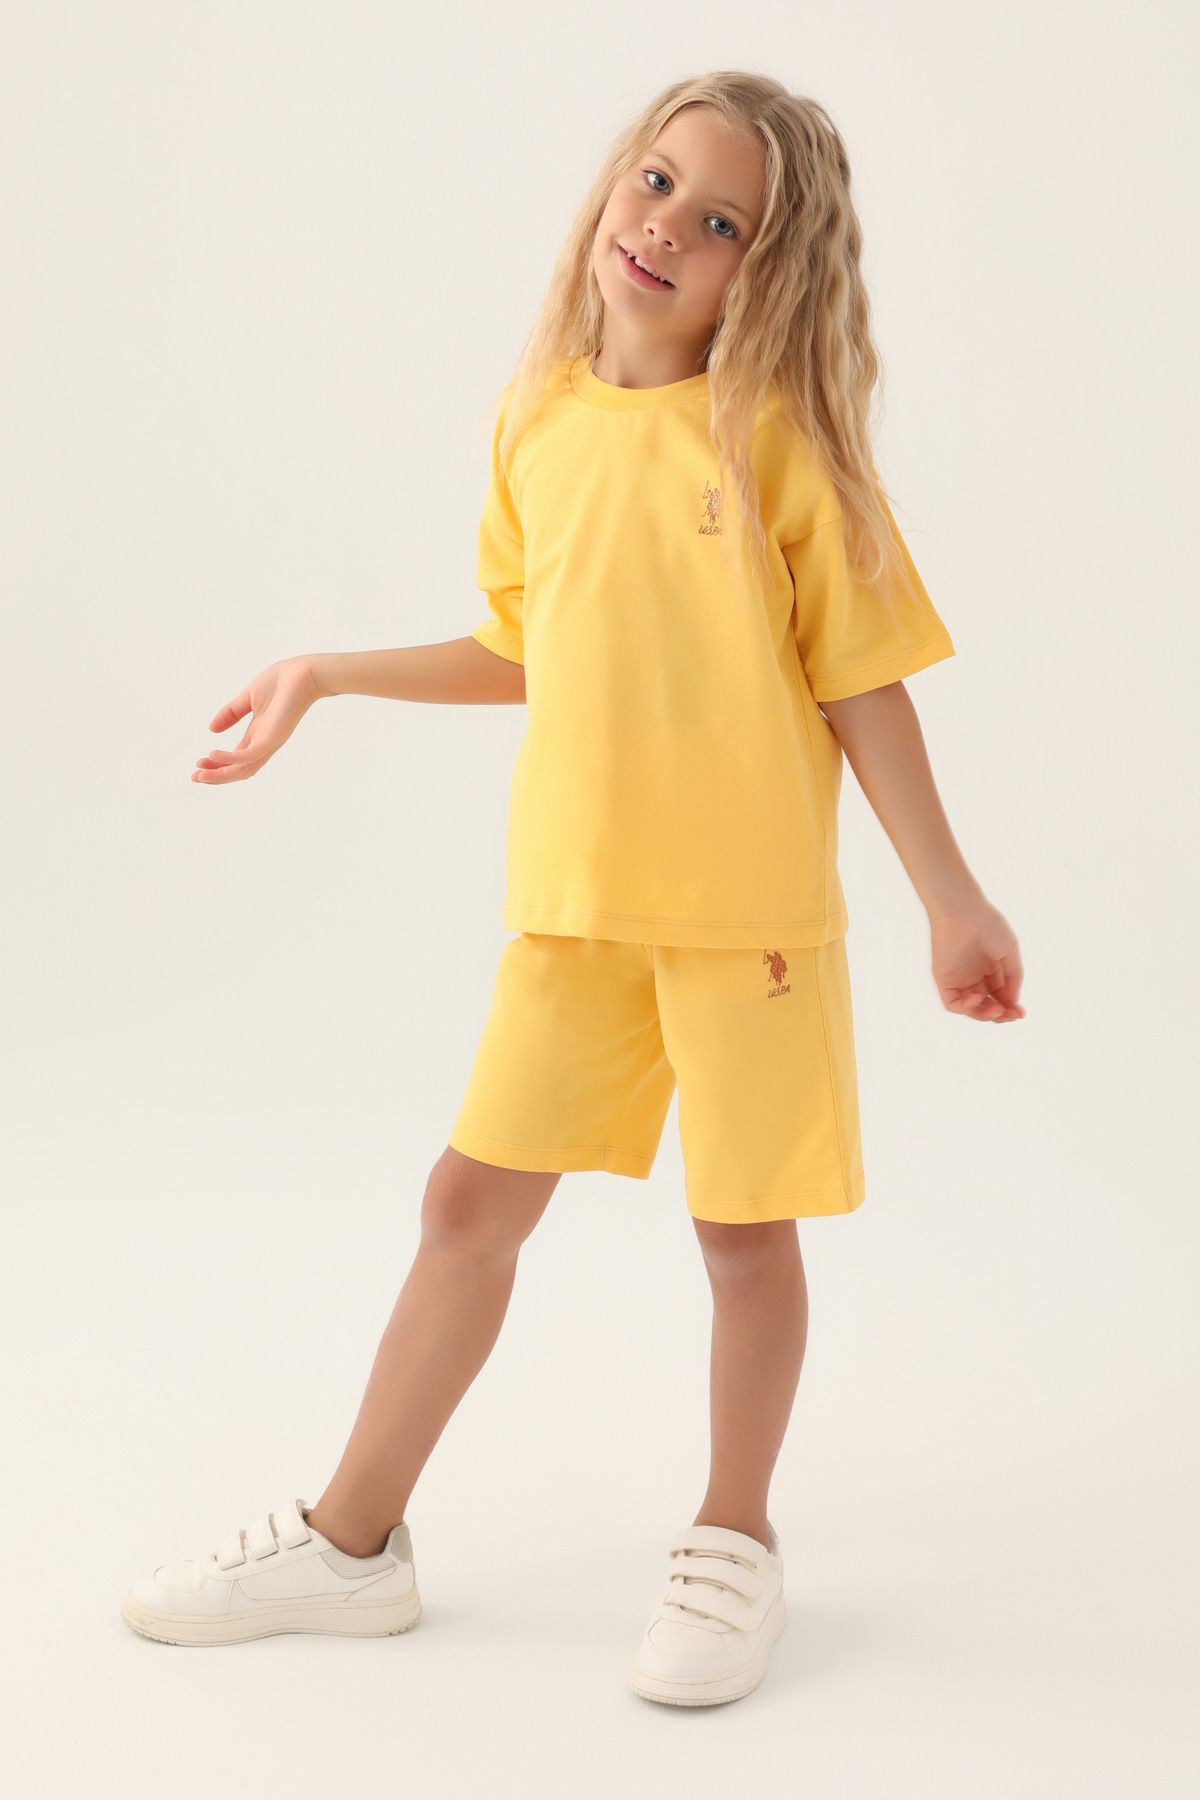 Костюм повседневный детский U.S. POLO Assn. US1822-V1, желтый, 158 костюм повседневный детский u s polo assn us1822 v1 розовая пудра 146